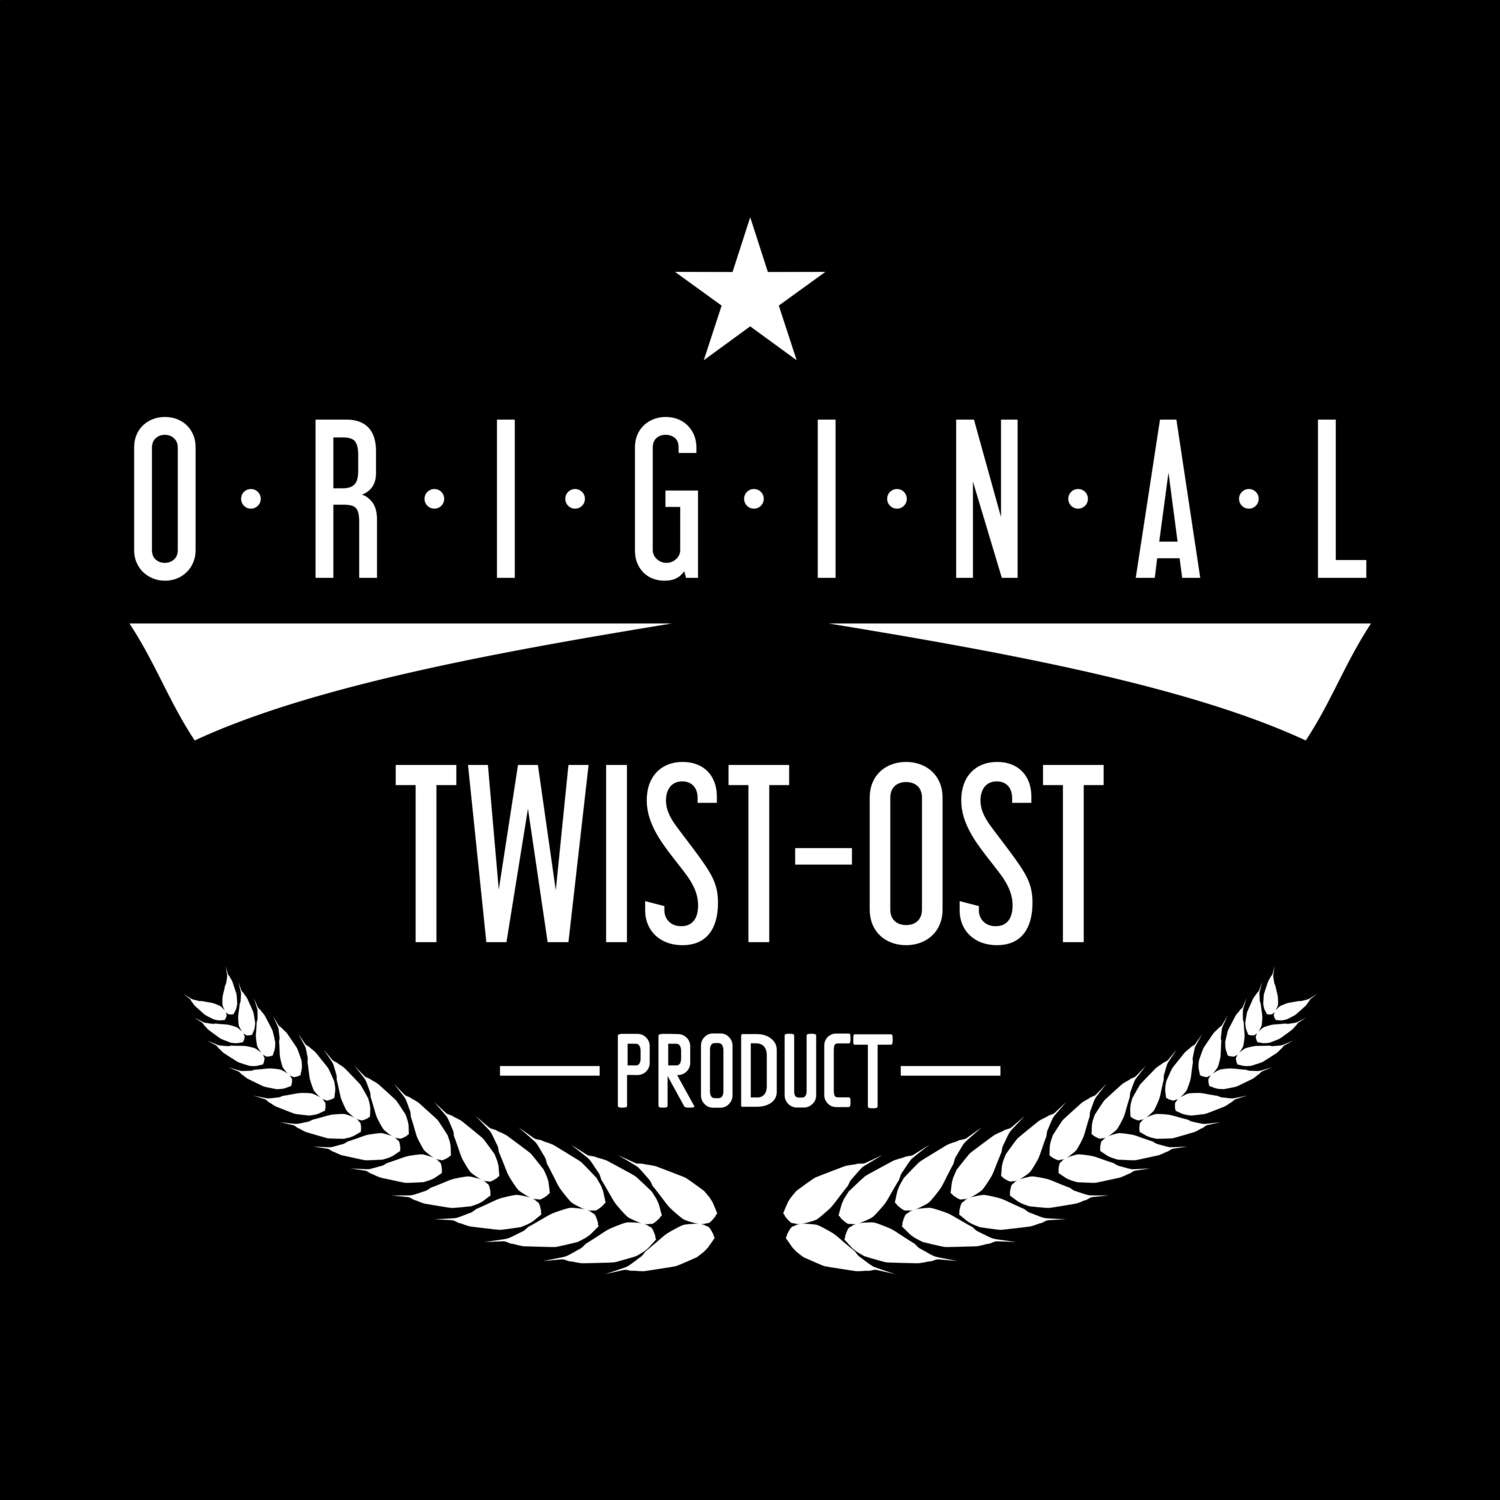 Twist-Ost T-Shirt »Original Product«